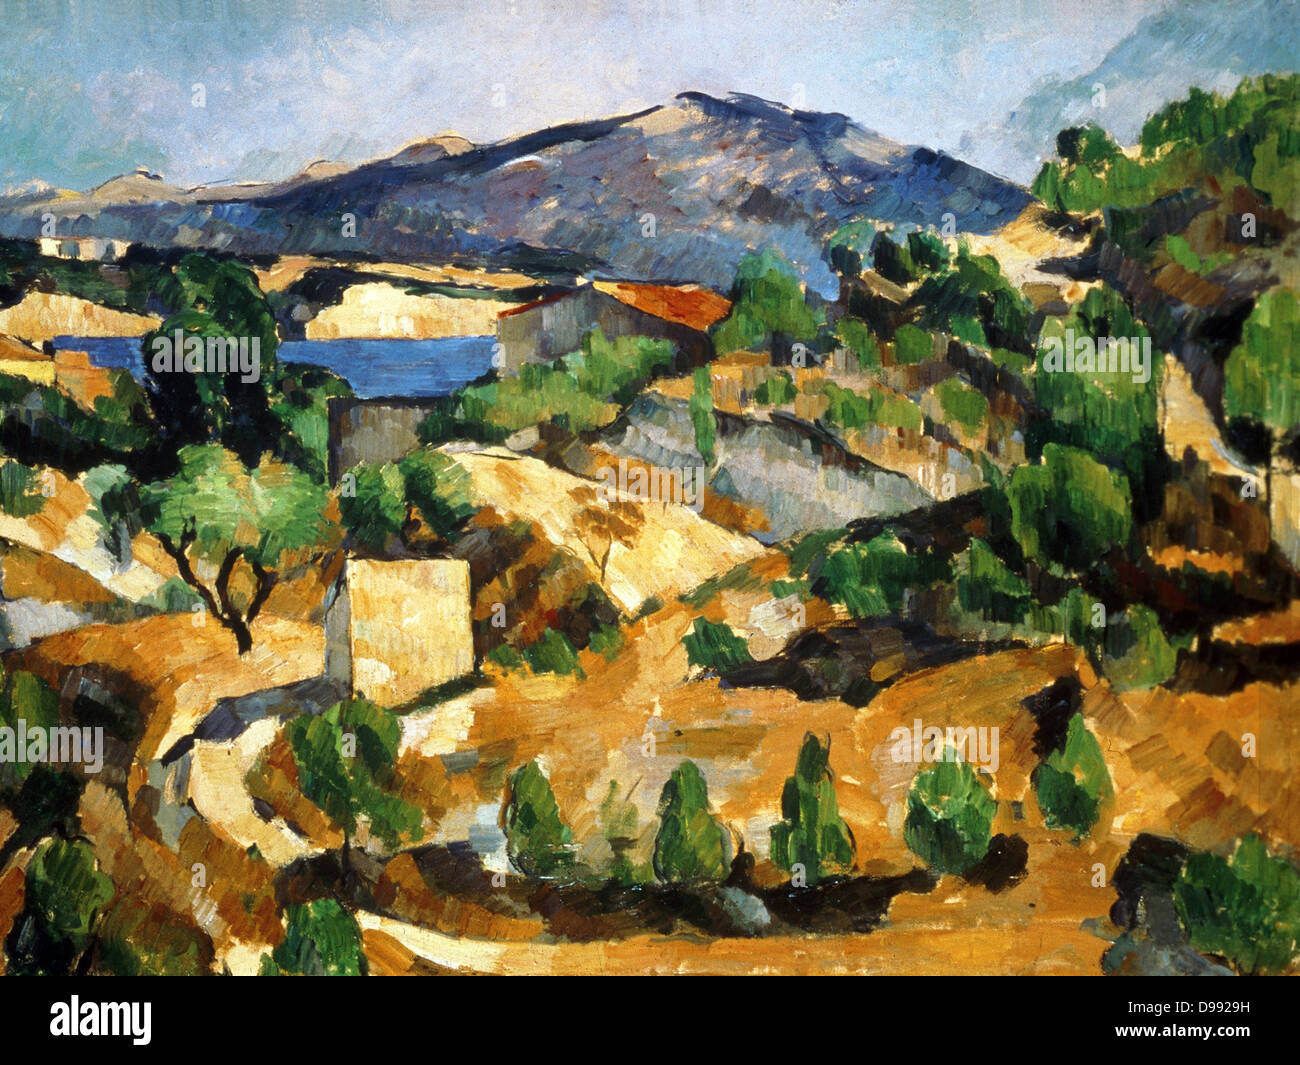 Die François Zola Dam', 1877 - 1878. Öl auf Leinwand. Paul Cezanne (1839-1906) French Post-Impressionist Painter. Landschaft Berge Wasser Aix-en-Provence Frankreich Stockfoto